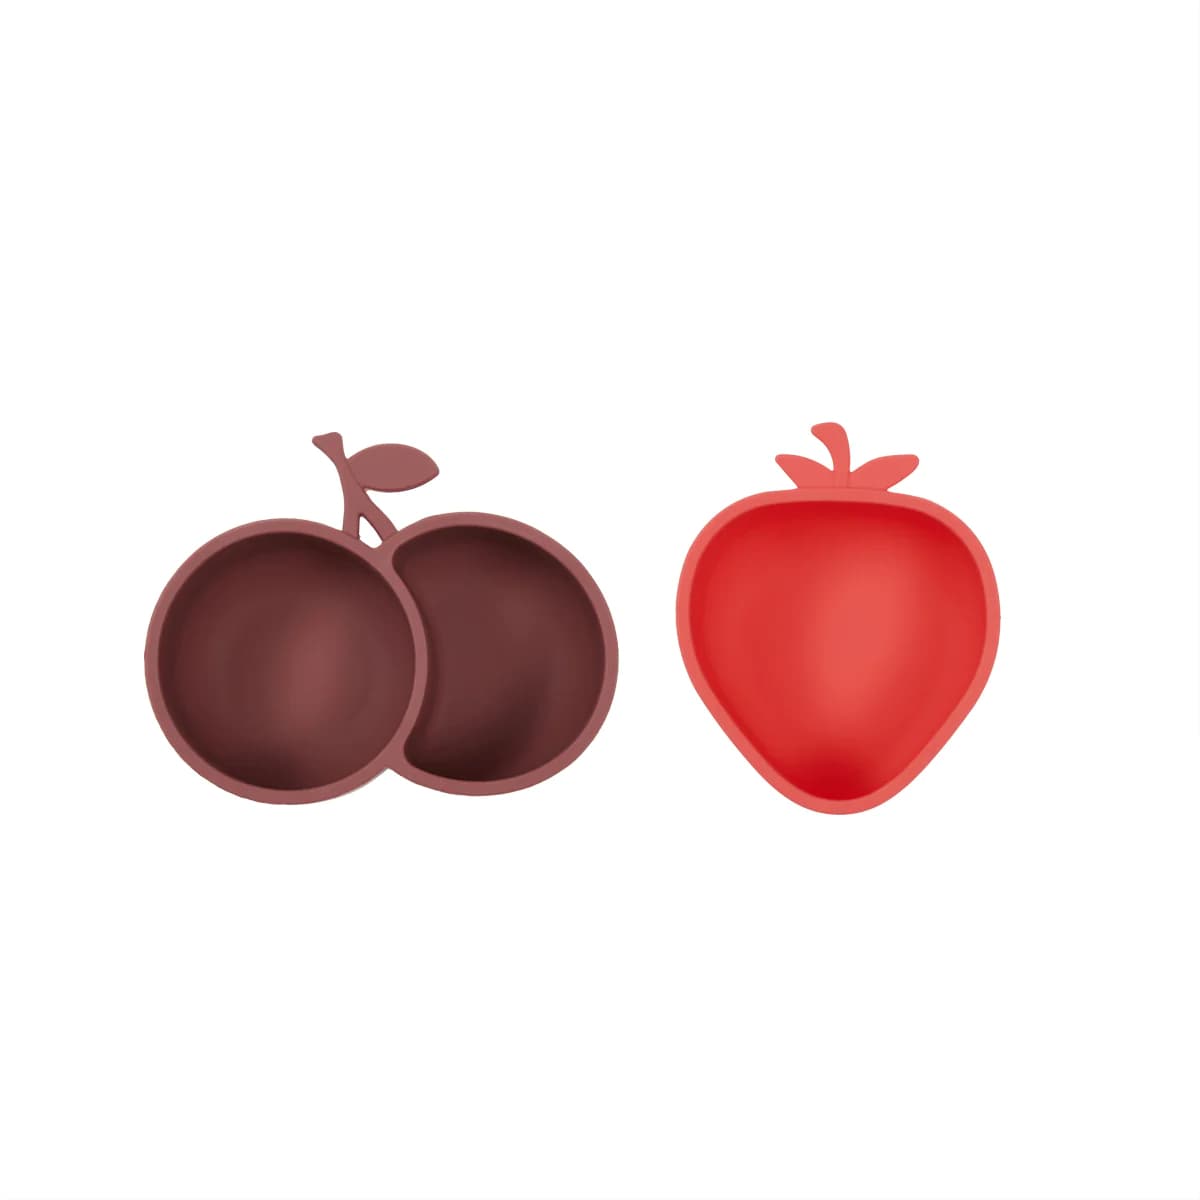 Kinderschalen für Snacks "Yummy Strawberry & Cherry" 2er Set